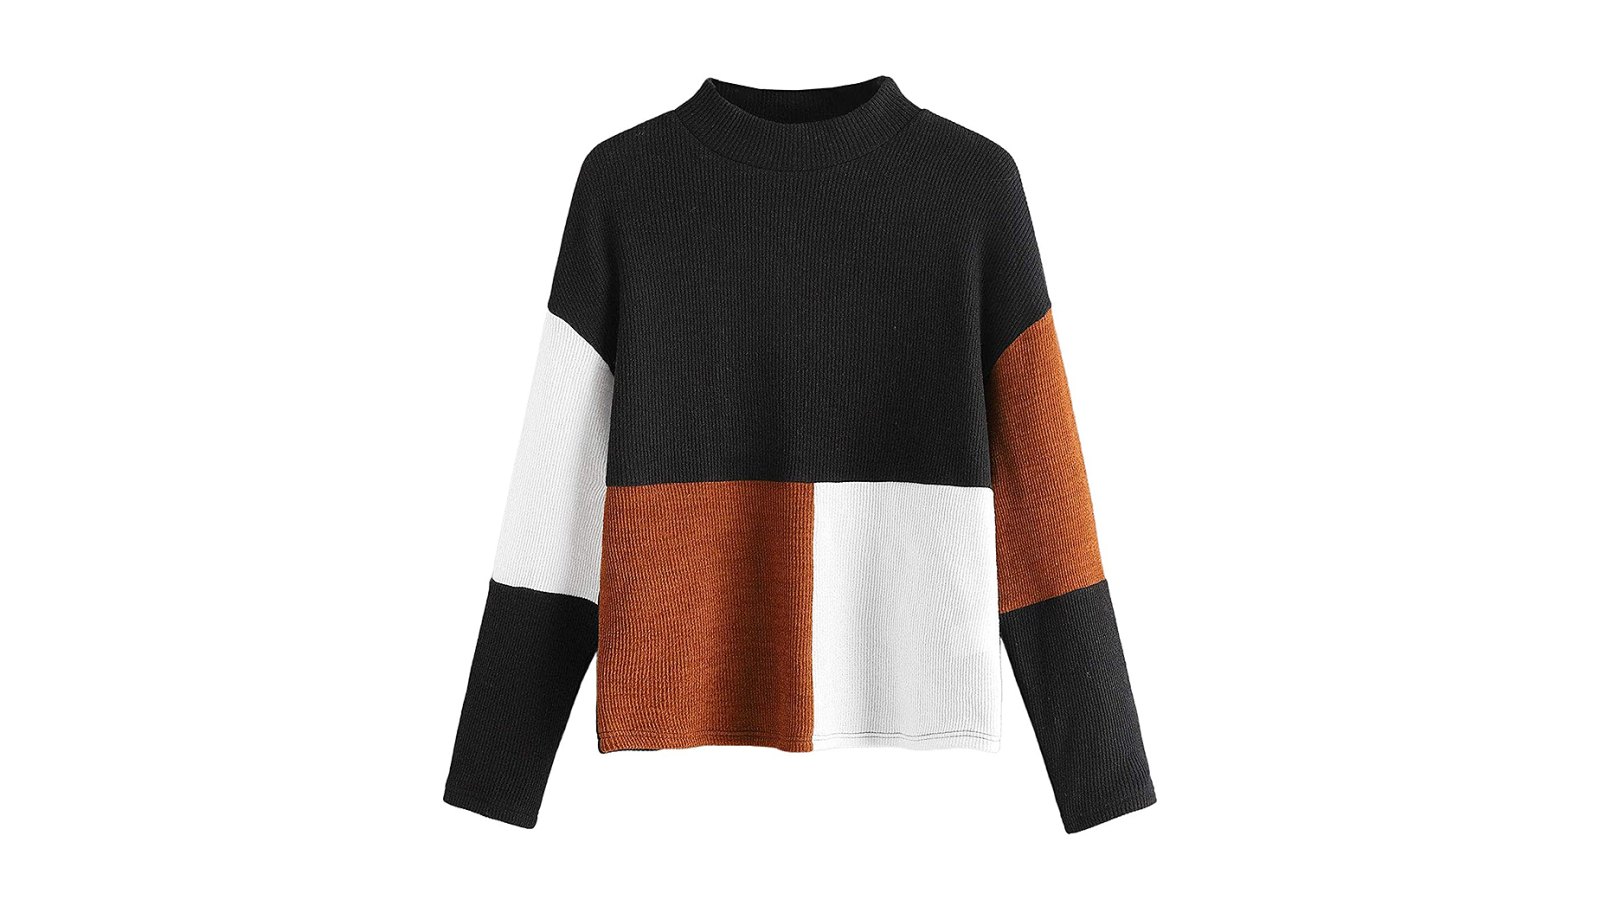 SweatyRocks Long-Sleeve Mock Neck Color-Block Casual Knit Sweater